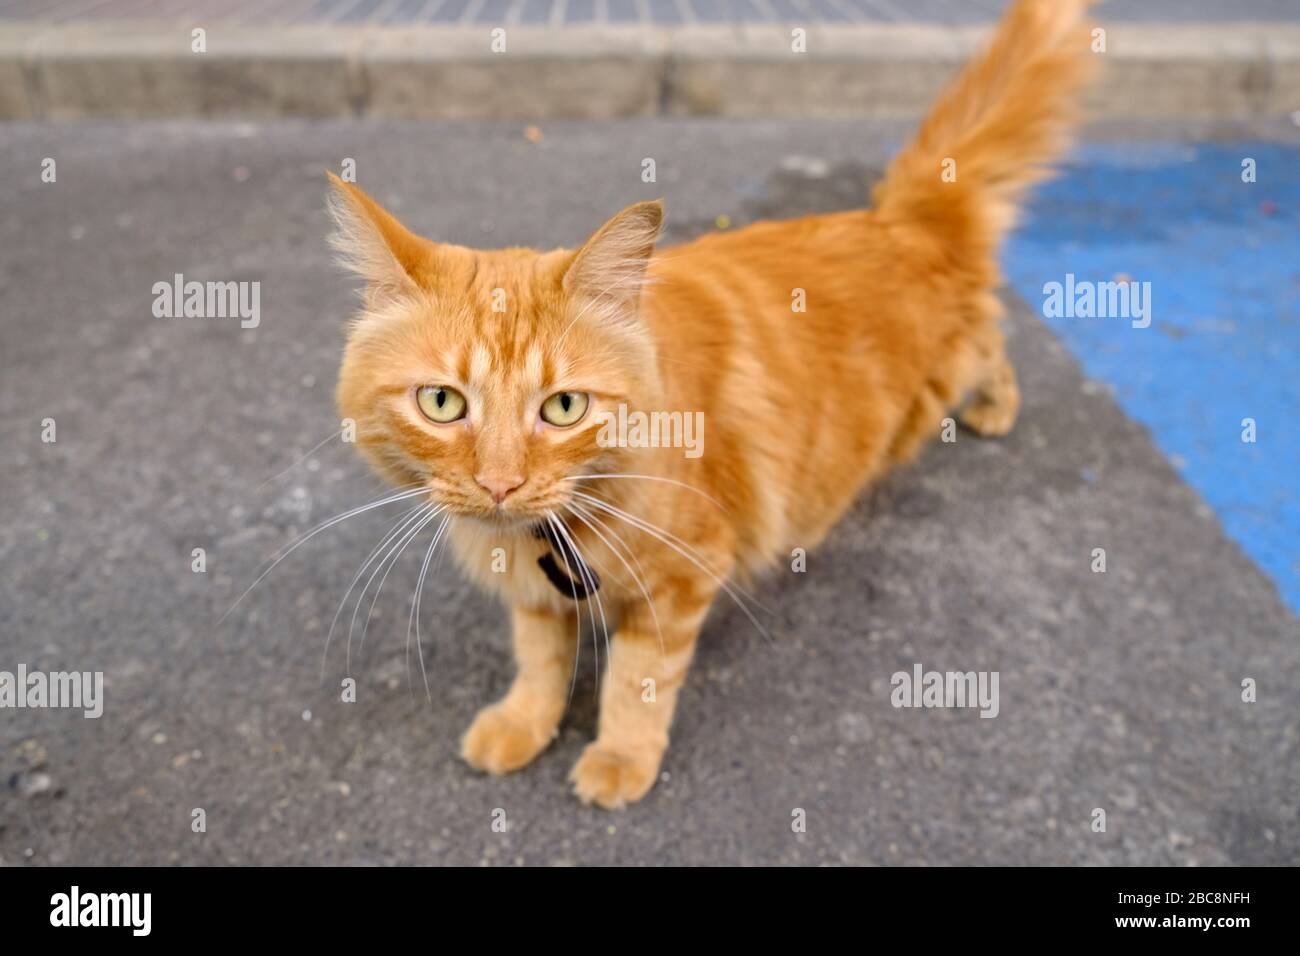 Adorable gato rojo tabby en la calle, modelo amigable y feliz para la fotografía de stock. Foto de stock